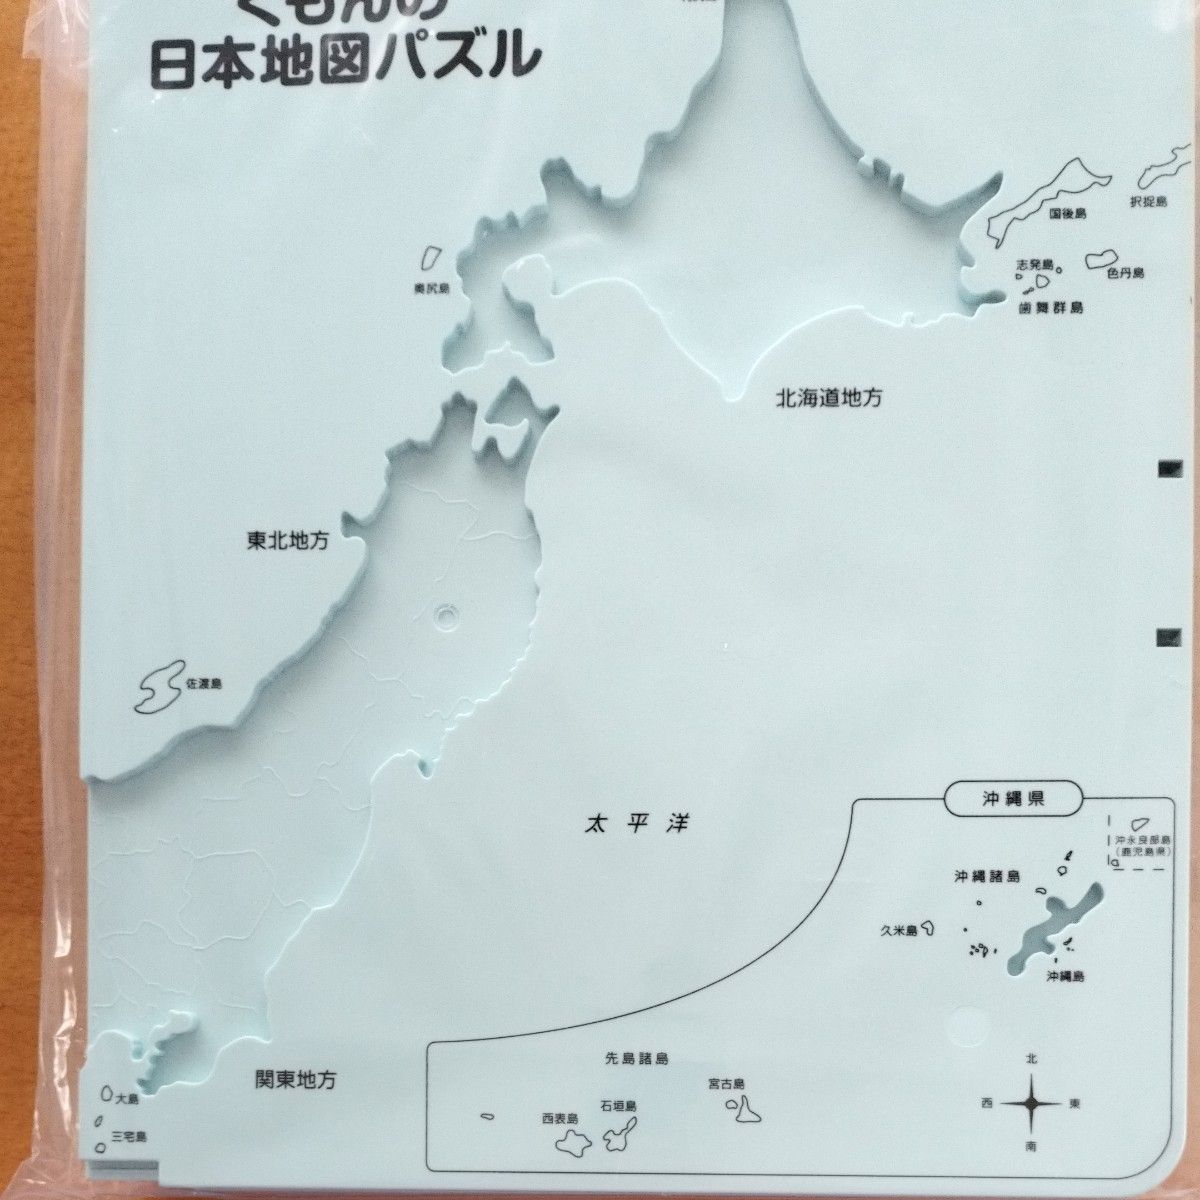 くもんの日本地図パズル 